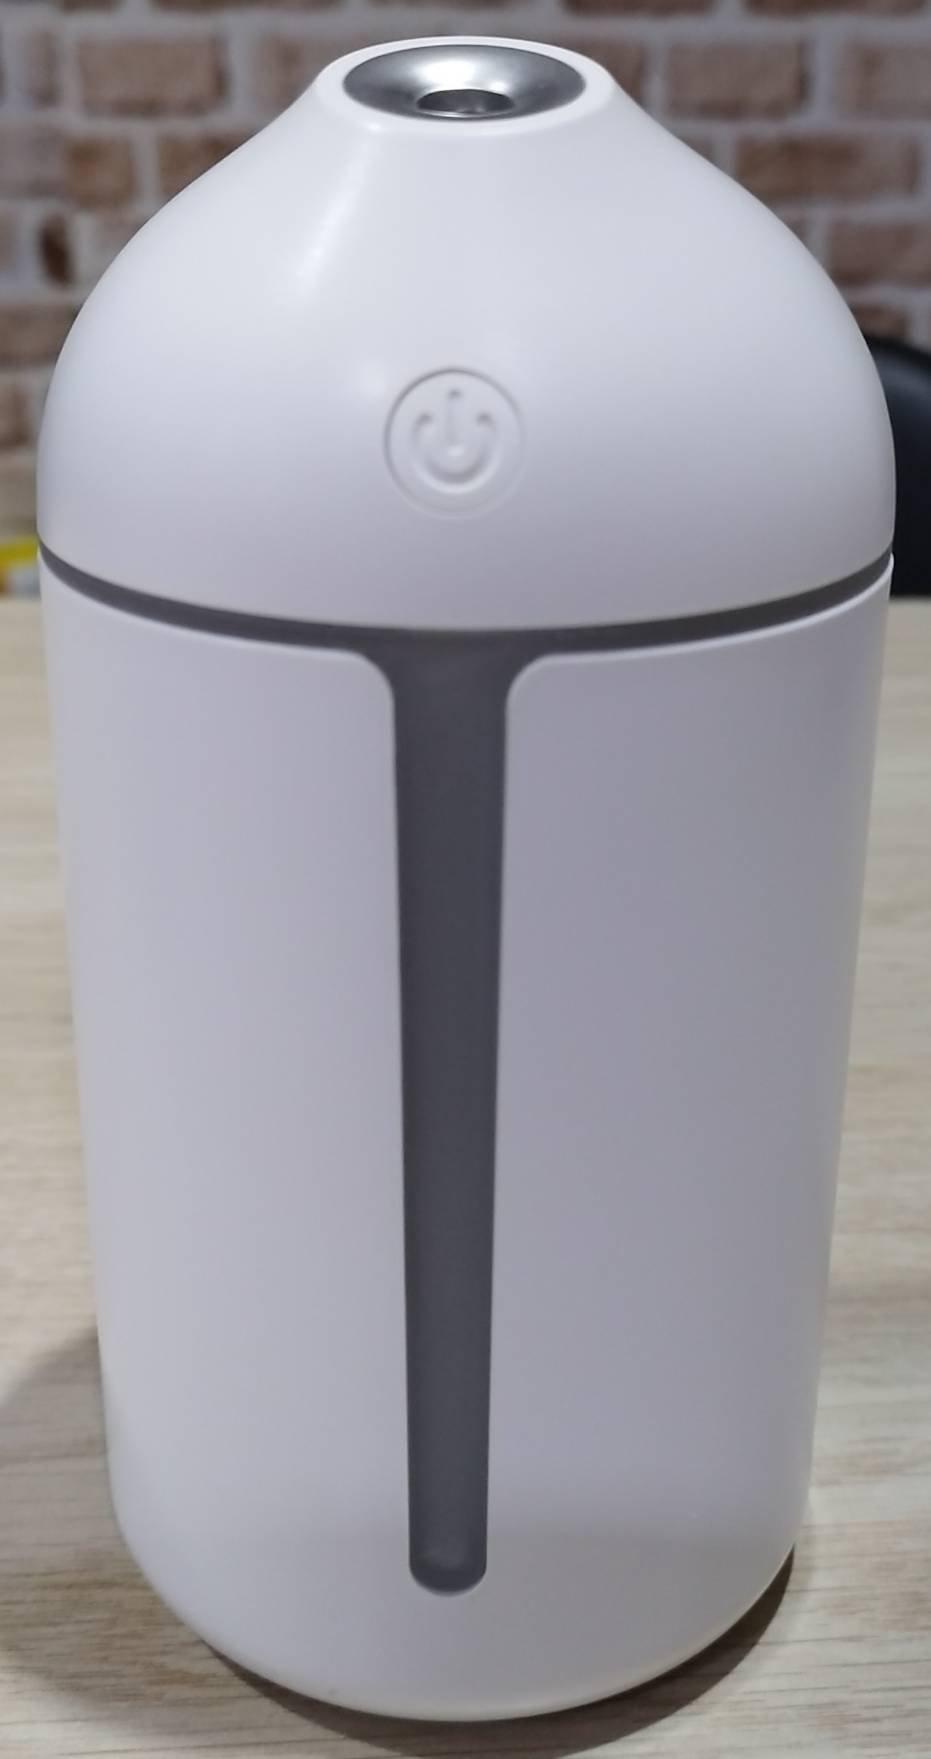 ขาย Mini Humidifier (Huawei Gift) เครื่องพ่นไอน้ำ เพิ่มความชื้นในอากาศ สินค้าใหม่